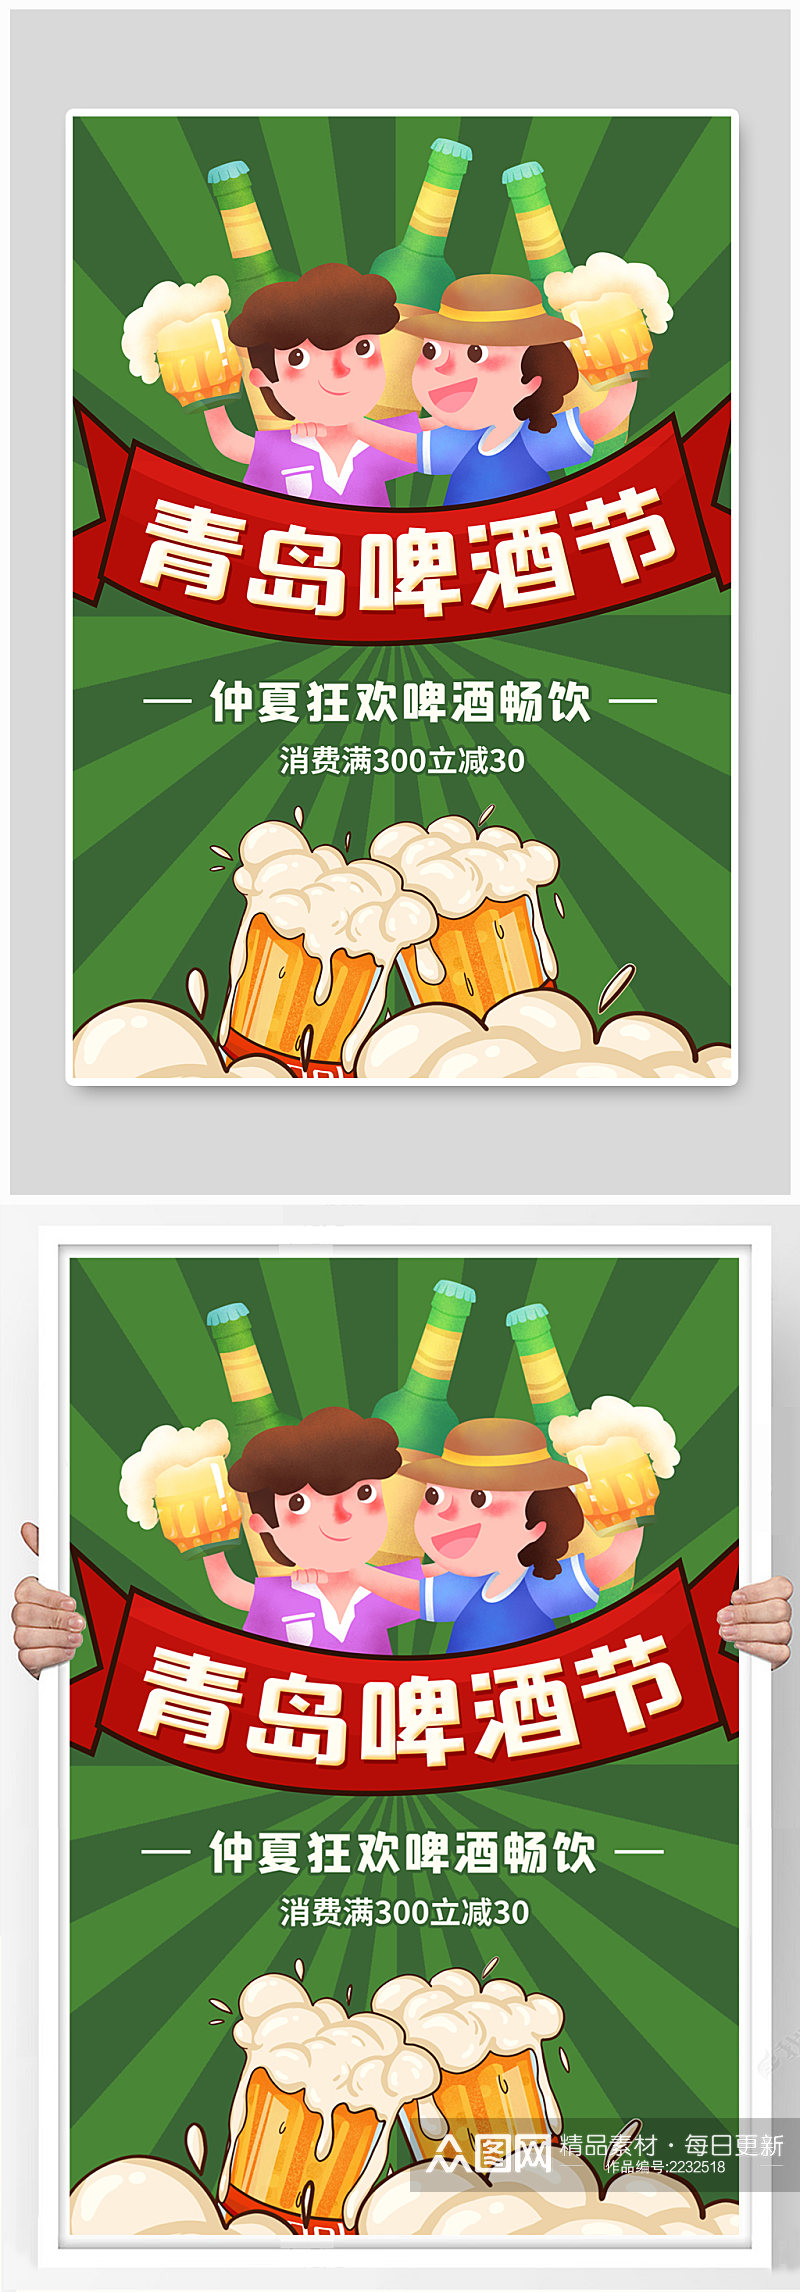 青岛啤酒节促销海报素材